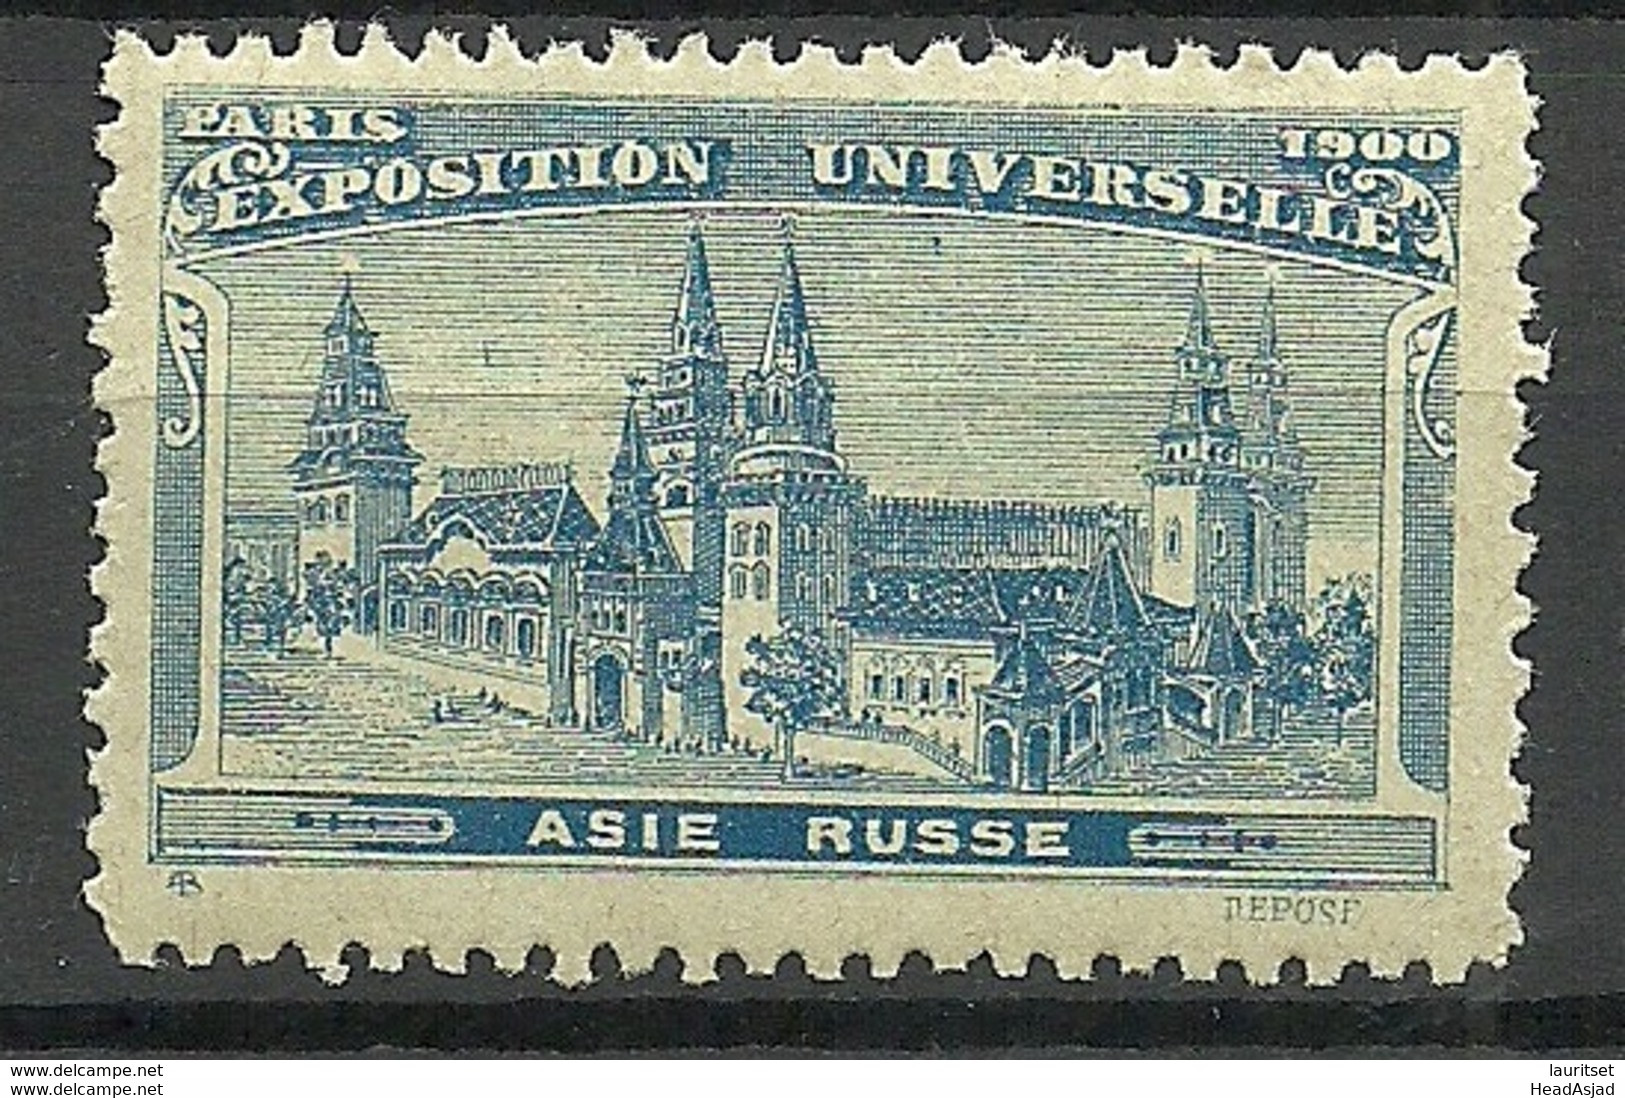 France 1900 EXPOSITION UNIVERSELLE Paris Asie Russe Pavillon MNH - 1900 – Paris (France)